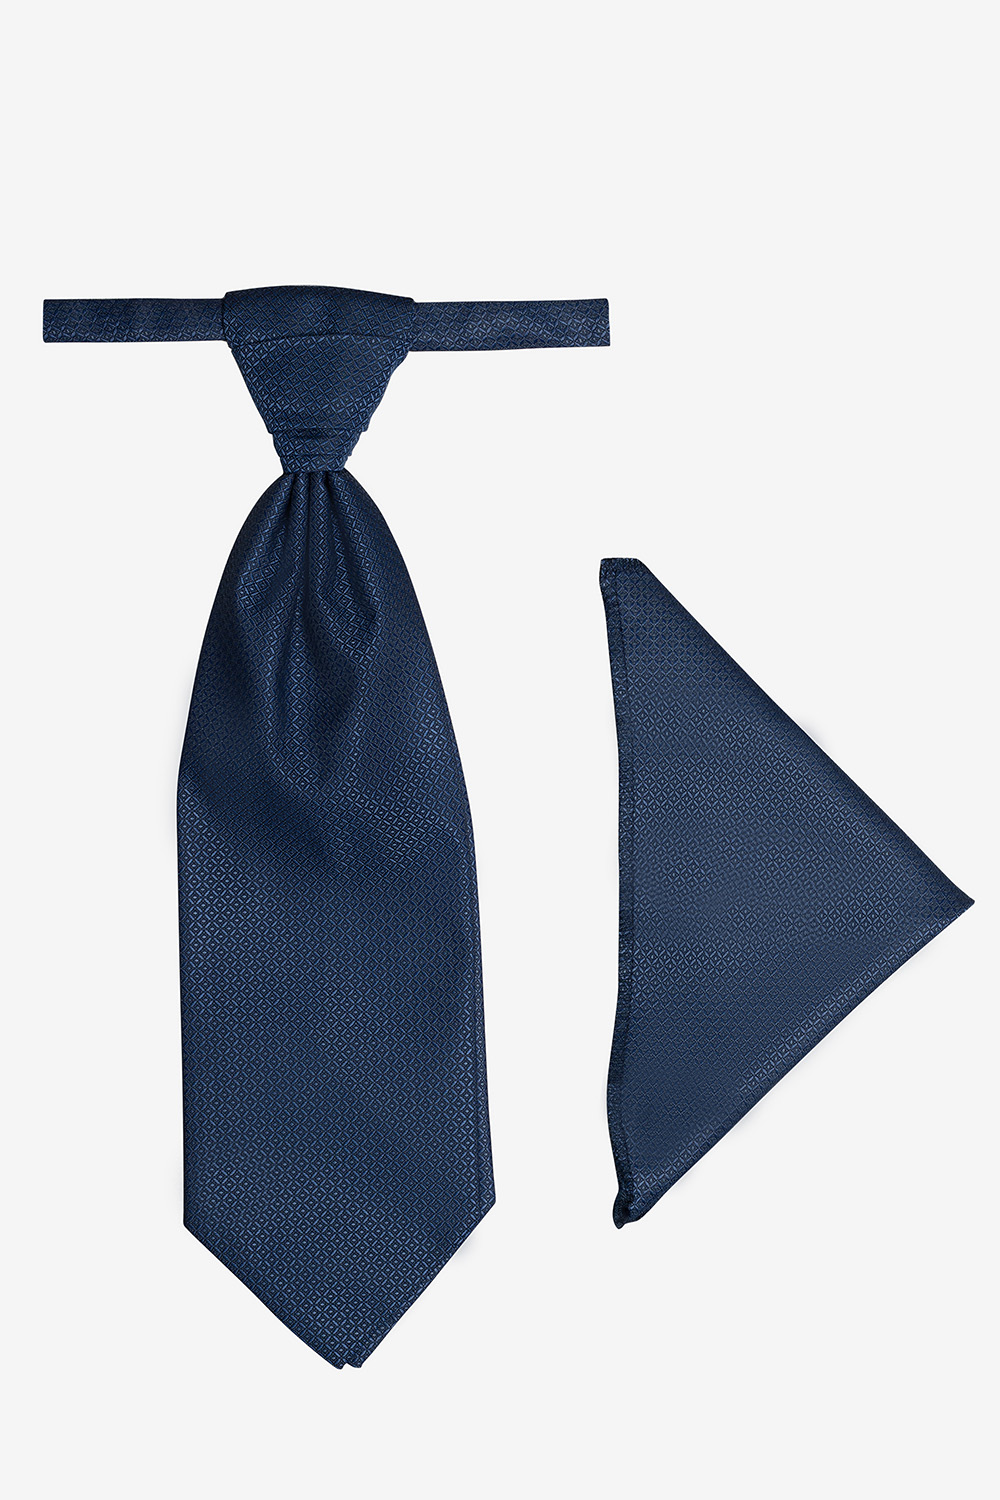 Manzetti zafírkék francia nyakkendő szett 9435-14